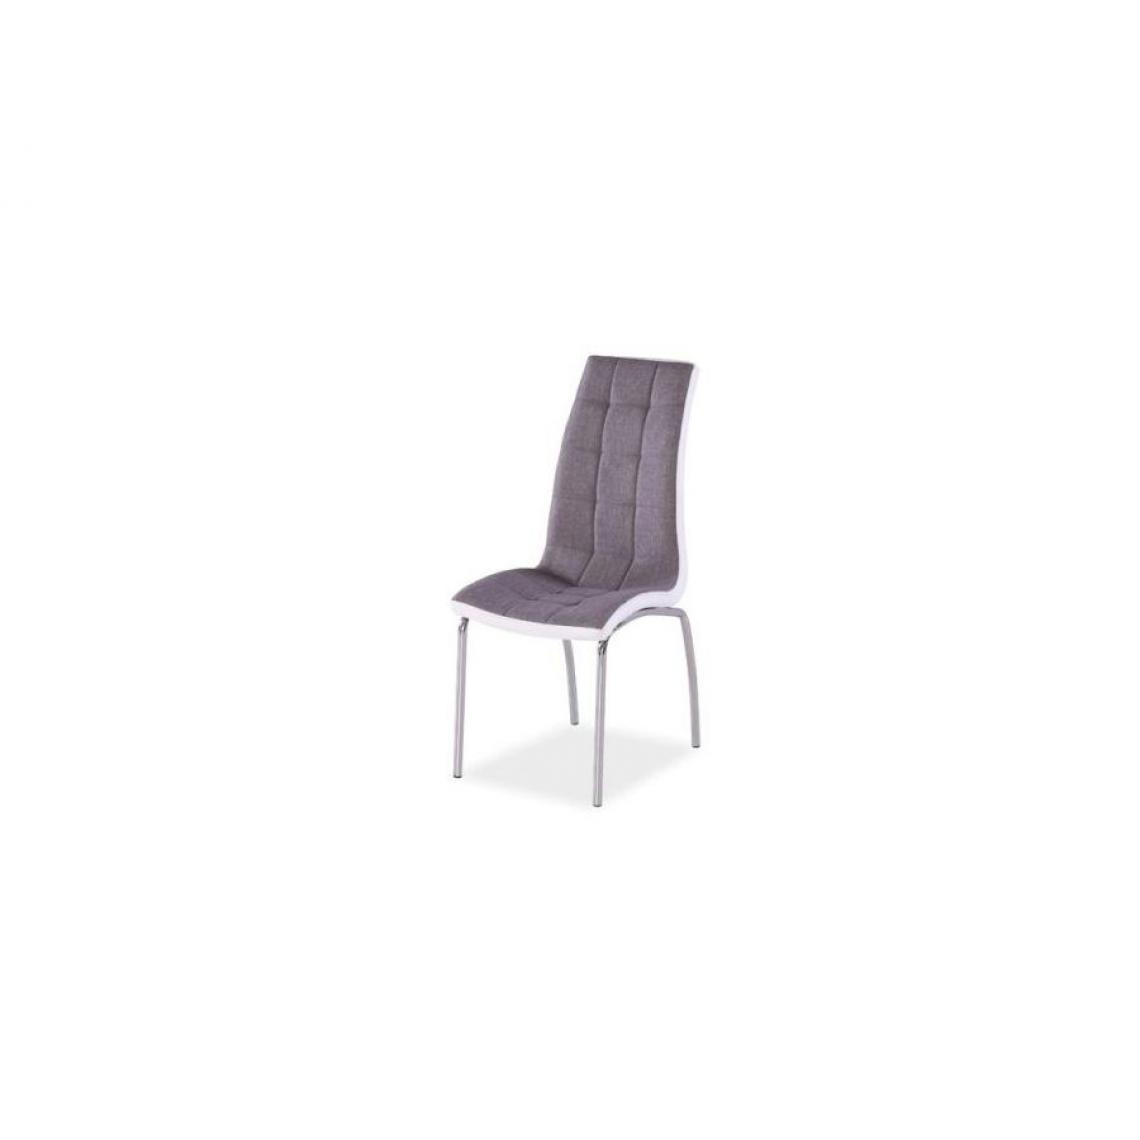 Hucoco - RYLIE | Chaise moderne salle à manger salon bureau | Dimensions : 96x43x43cm | Rembourrage en cuir écologique | Base en métal - Gris - Chaises